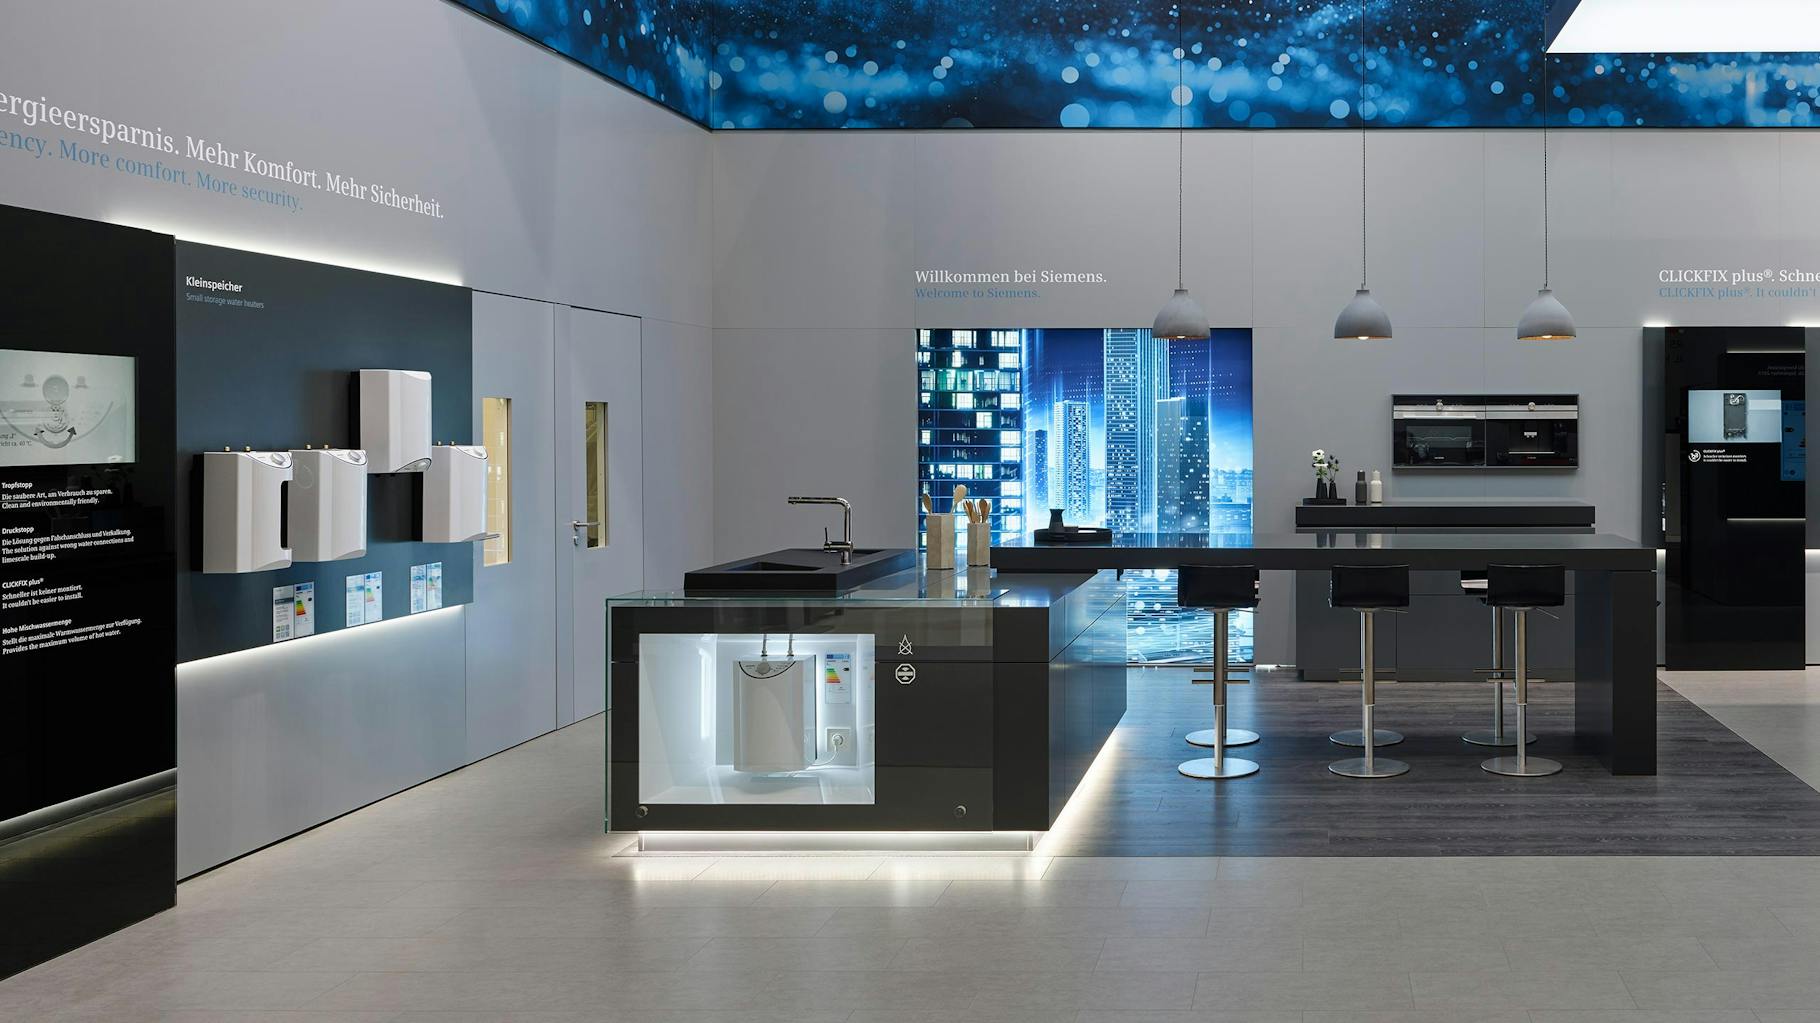 Das Foto zeigt eine futuristische Küche in einem Showroom, mit Beschreibungen an der Wand und einer Decke aus LED Panels